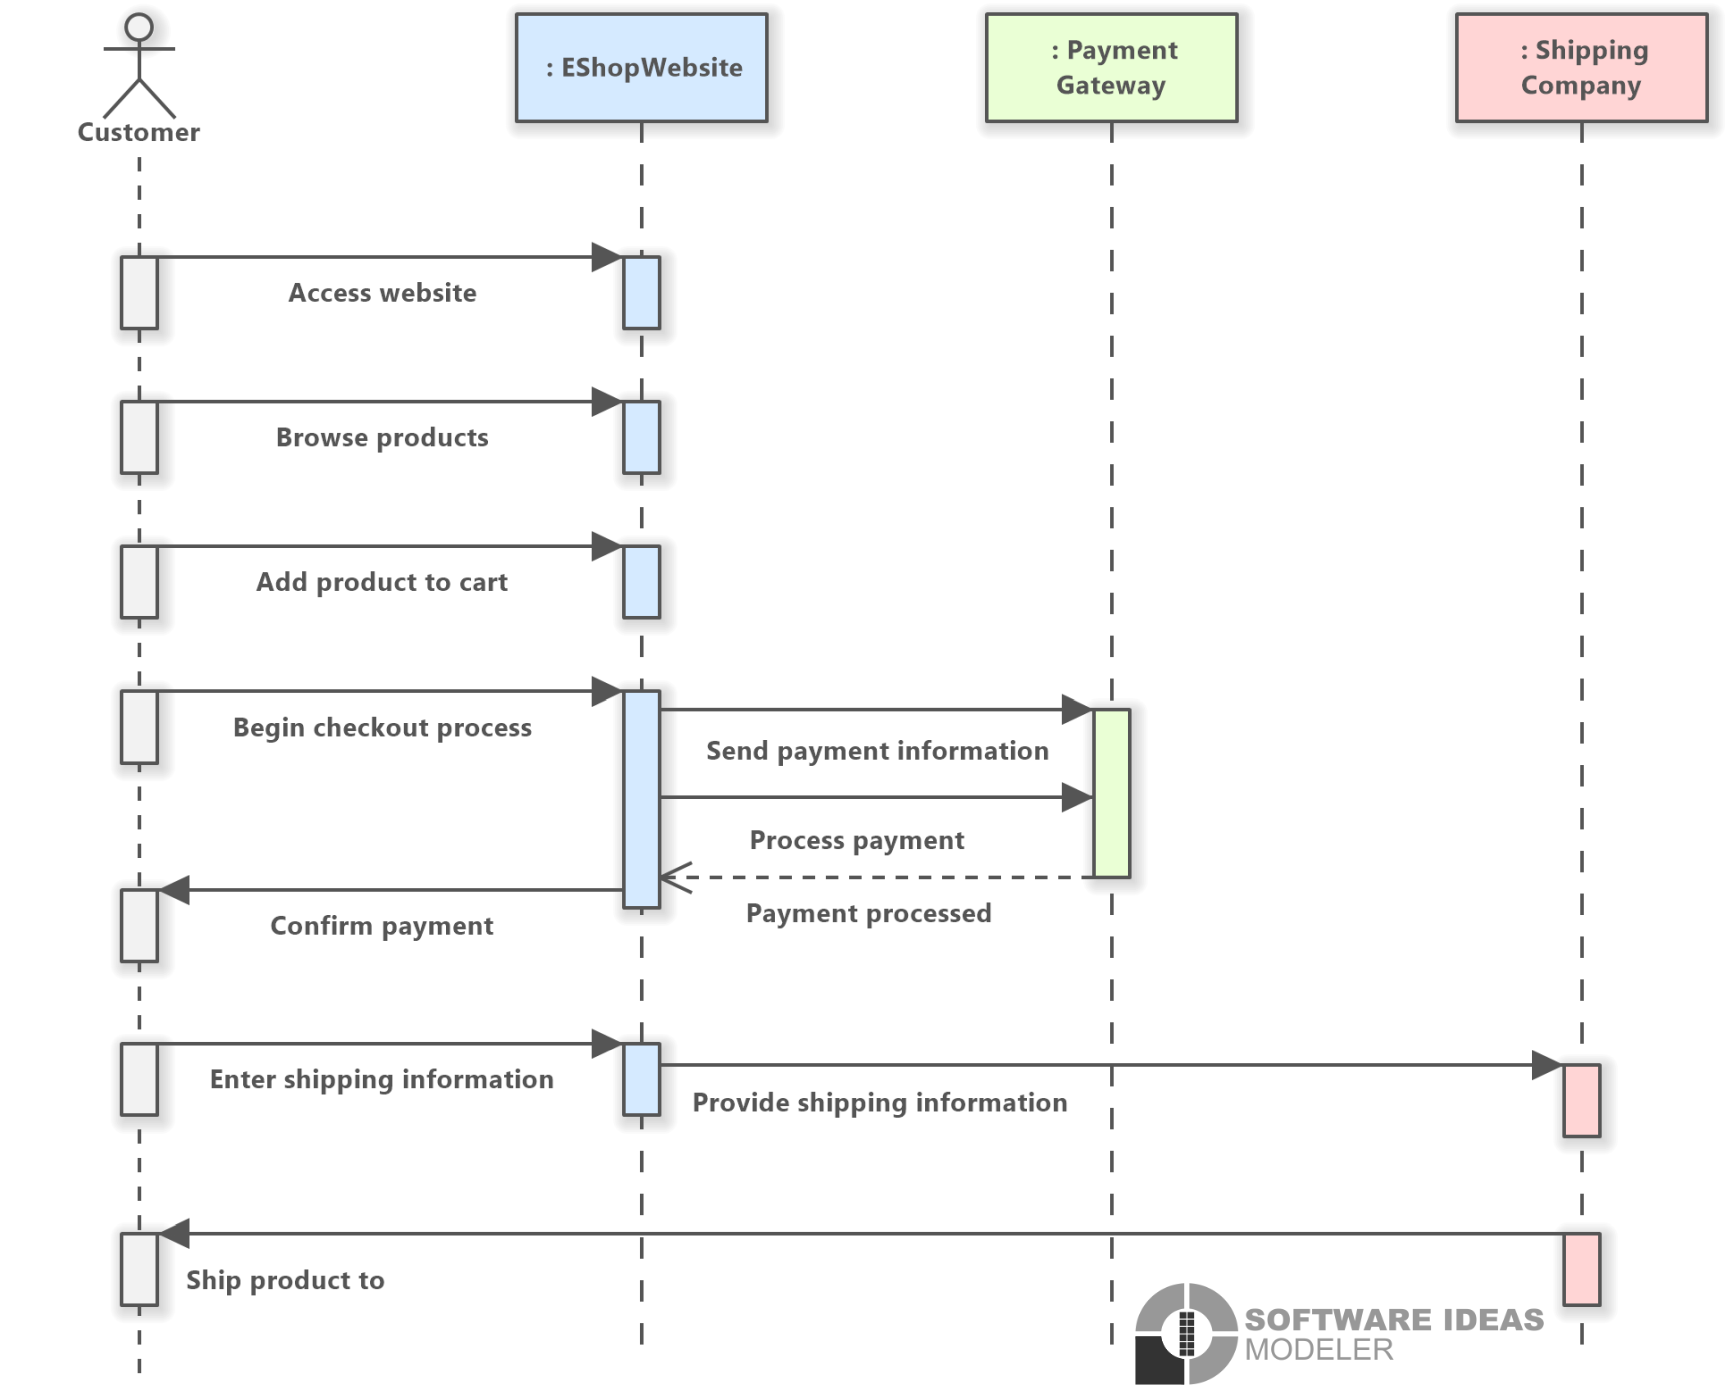 Online Shopping (UML Sequence Diagram) Software Ideas Modeler